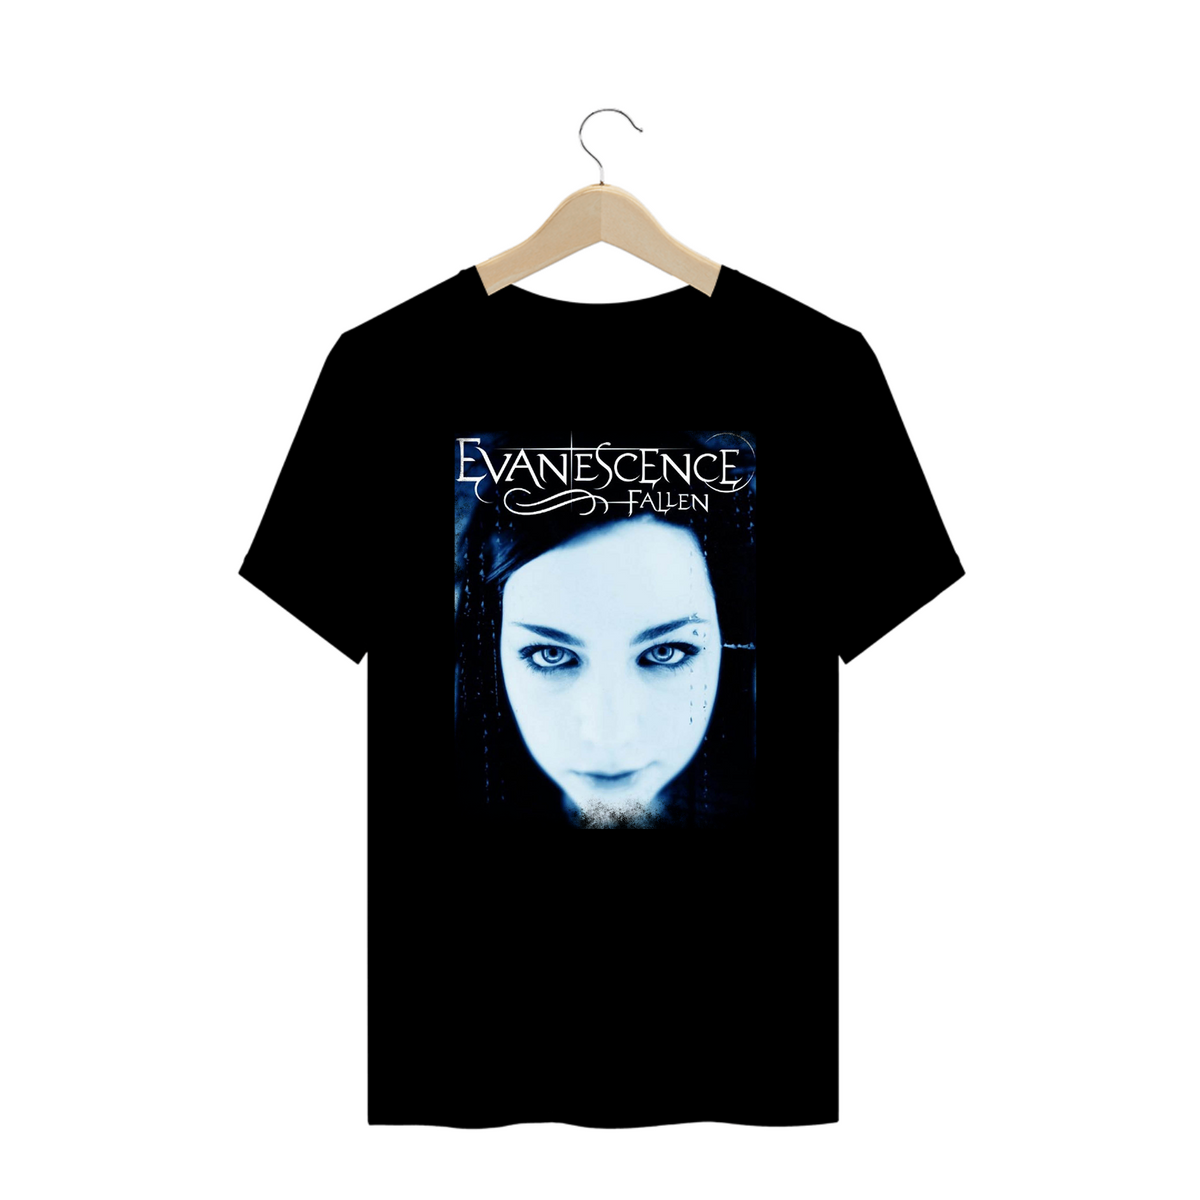 Nome do produto: Evanescence - Plus Size